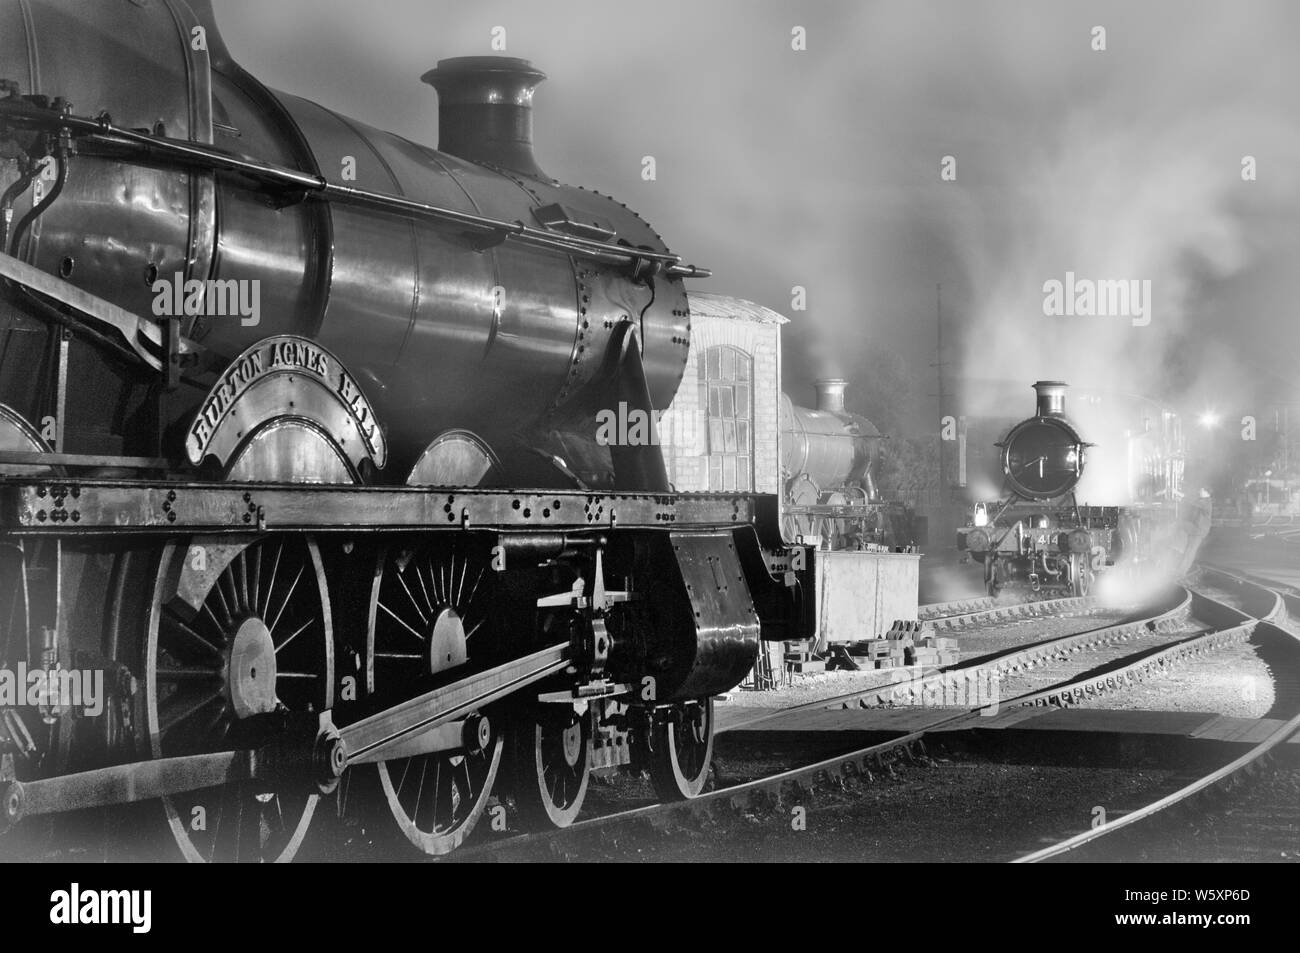 Ricreazione nostalgica di una scena del capannone ferroviario dell'era del vapore, in bianco e nero, enfatizzando i giorni passati della gloria. Foto Stock